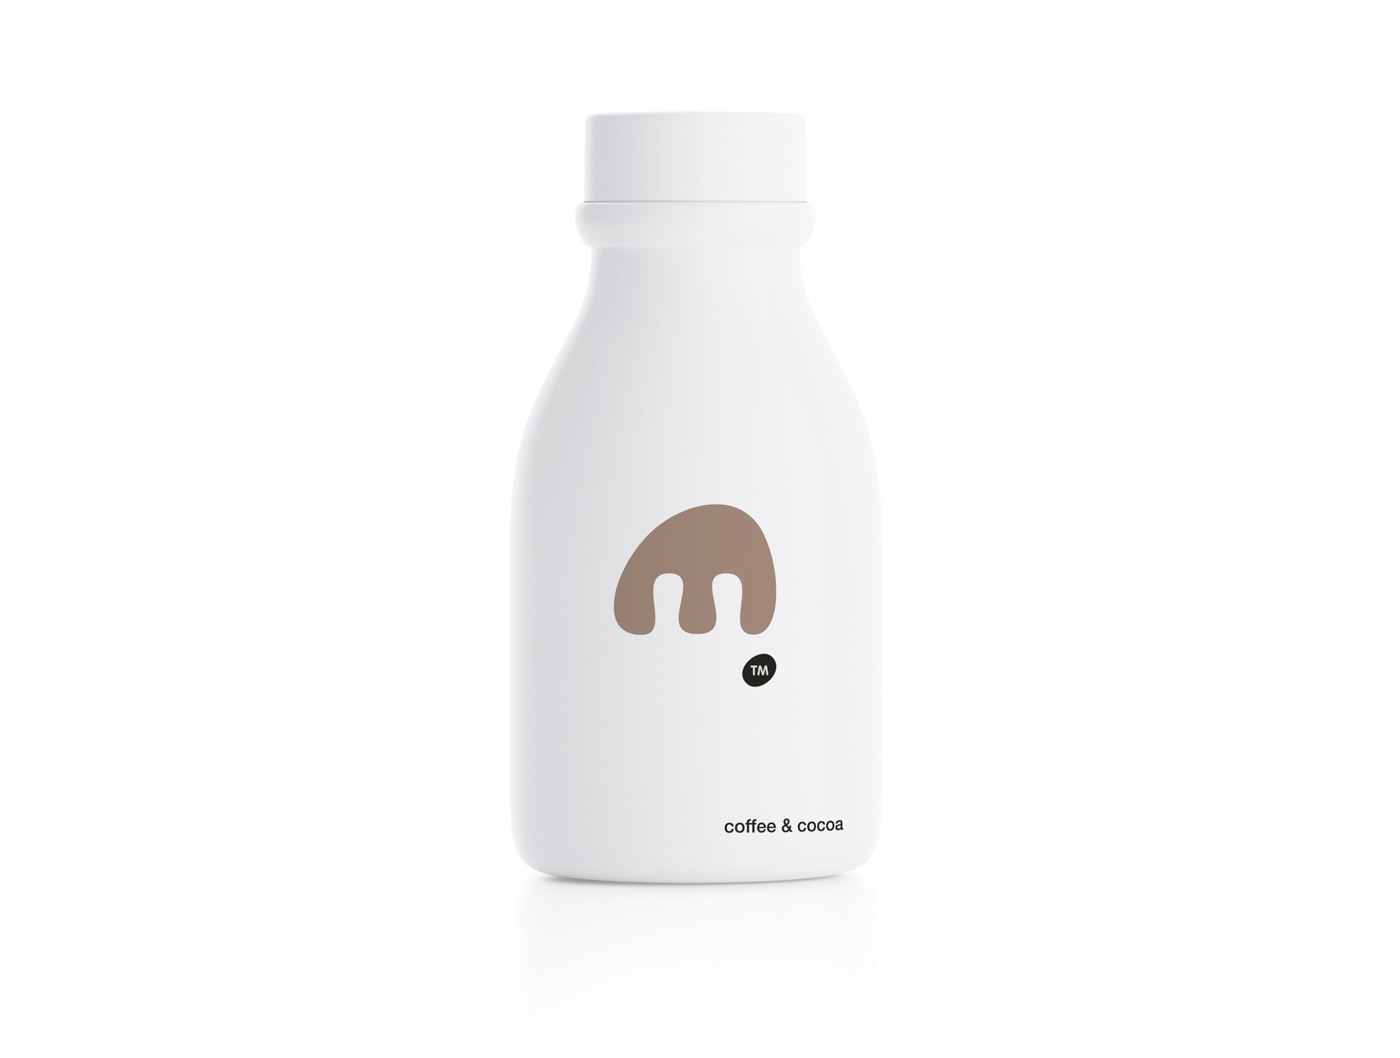 极简风格的MOO酸奶包装